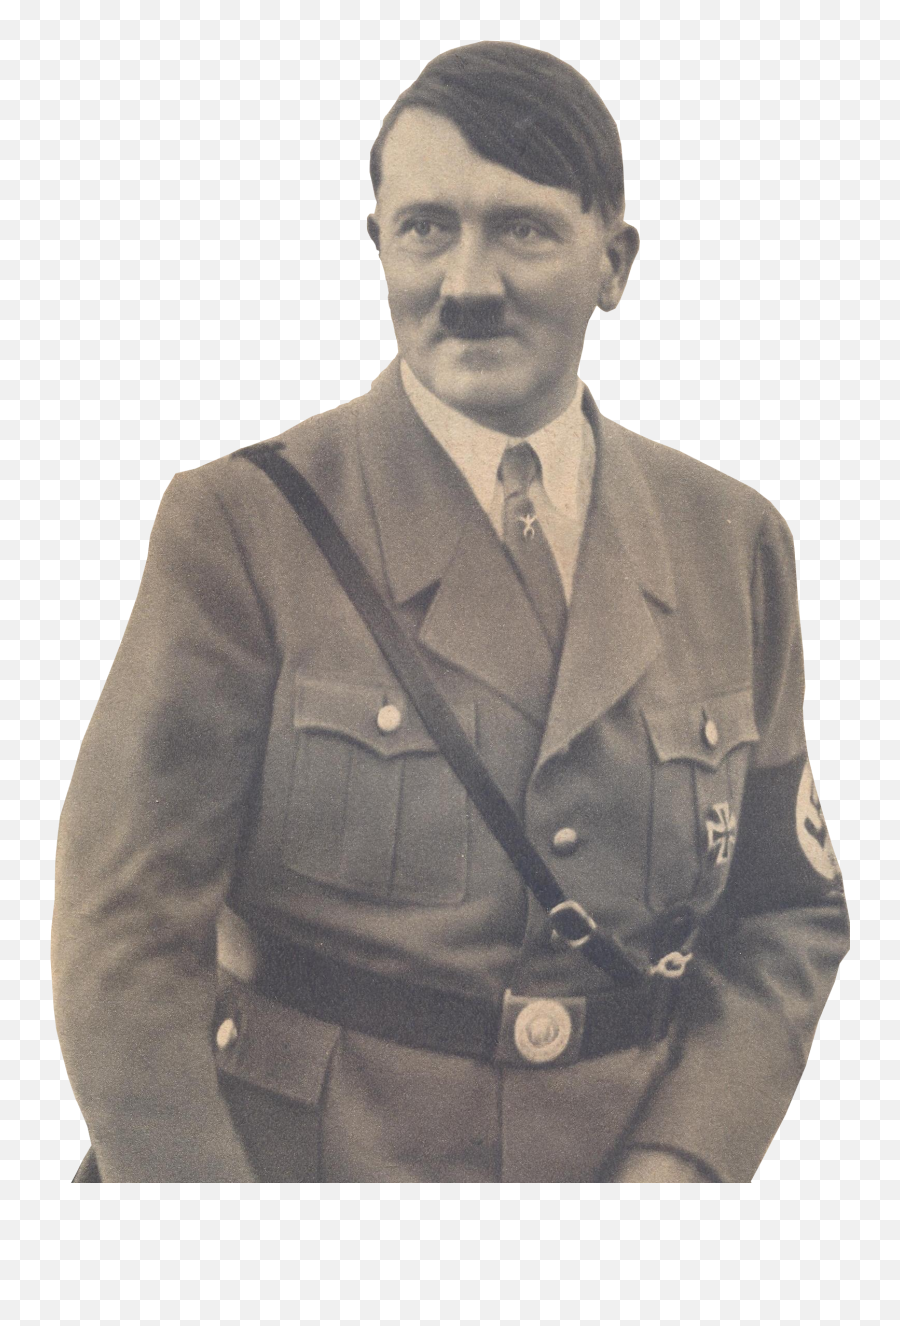 Adolf Hitler Png Images Free Download - Adolf Hitler Png Transparent,Adolf Hitler Png